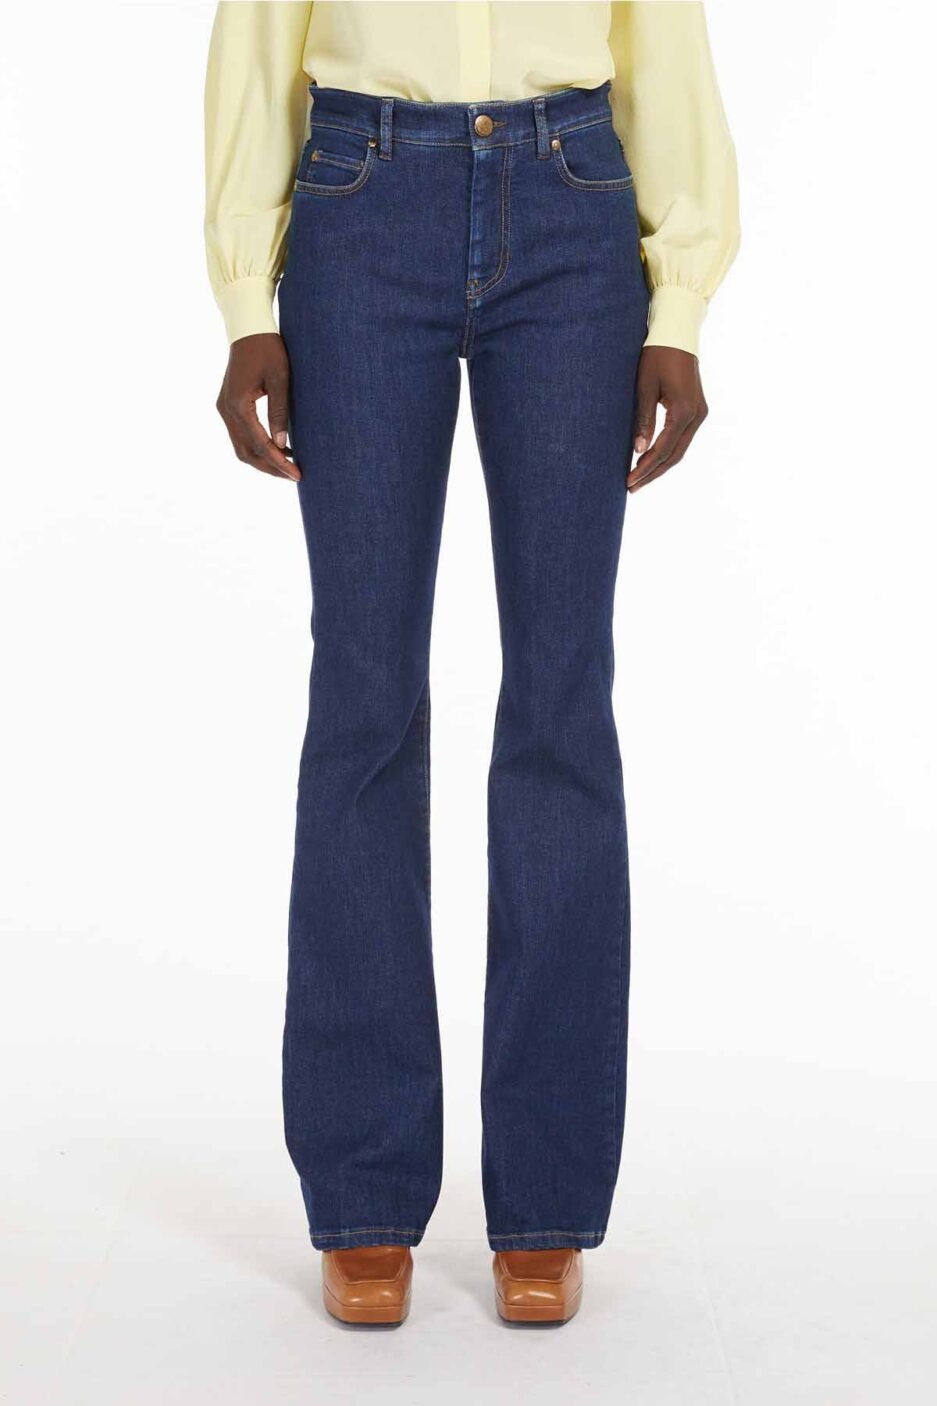 Pantalón de la marca Max Mara Jeans